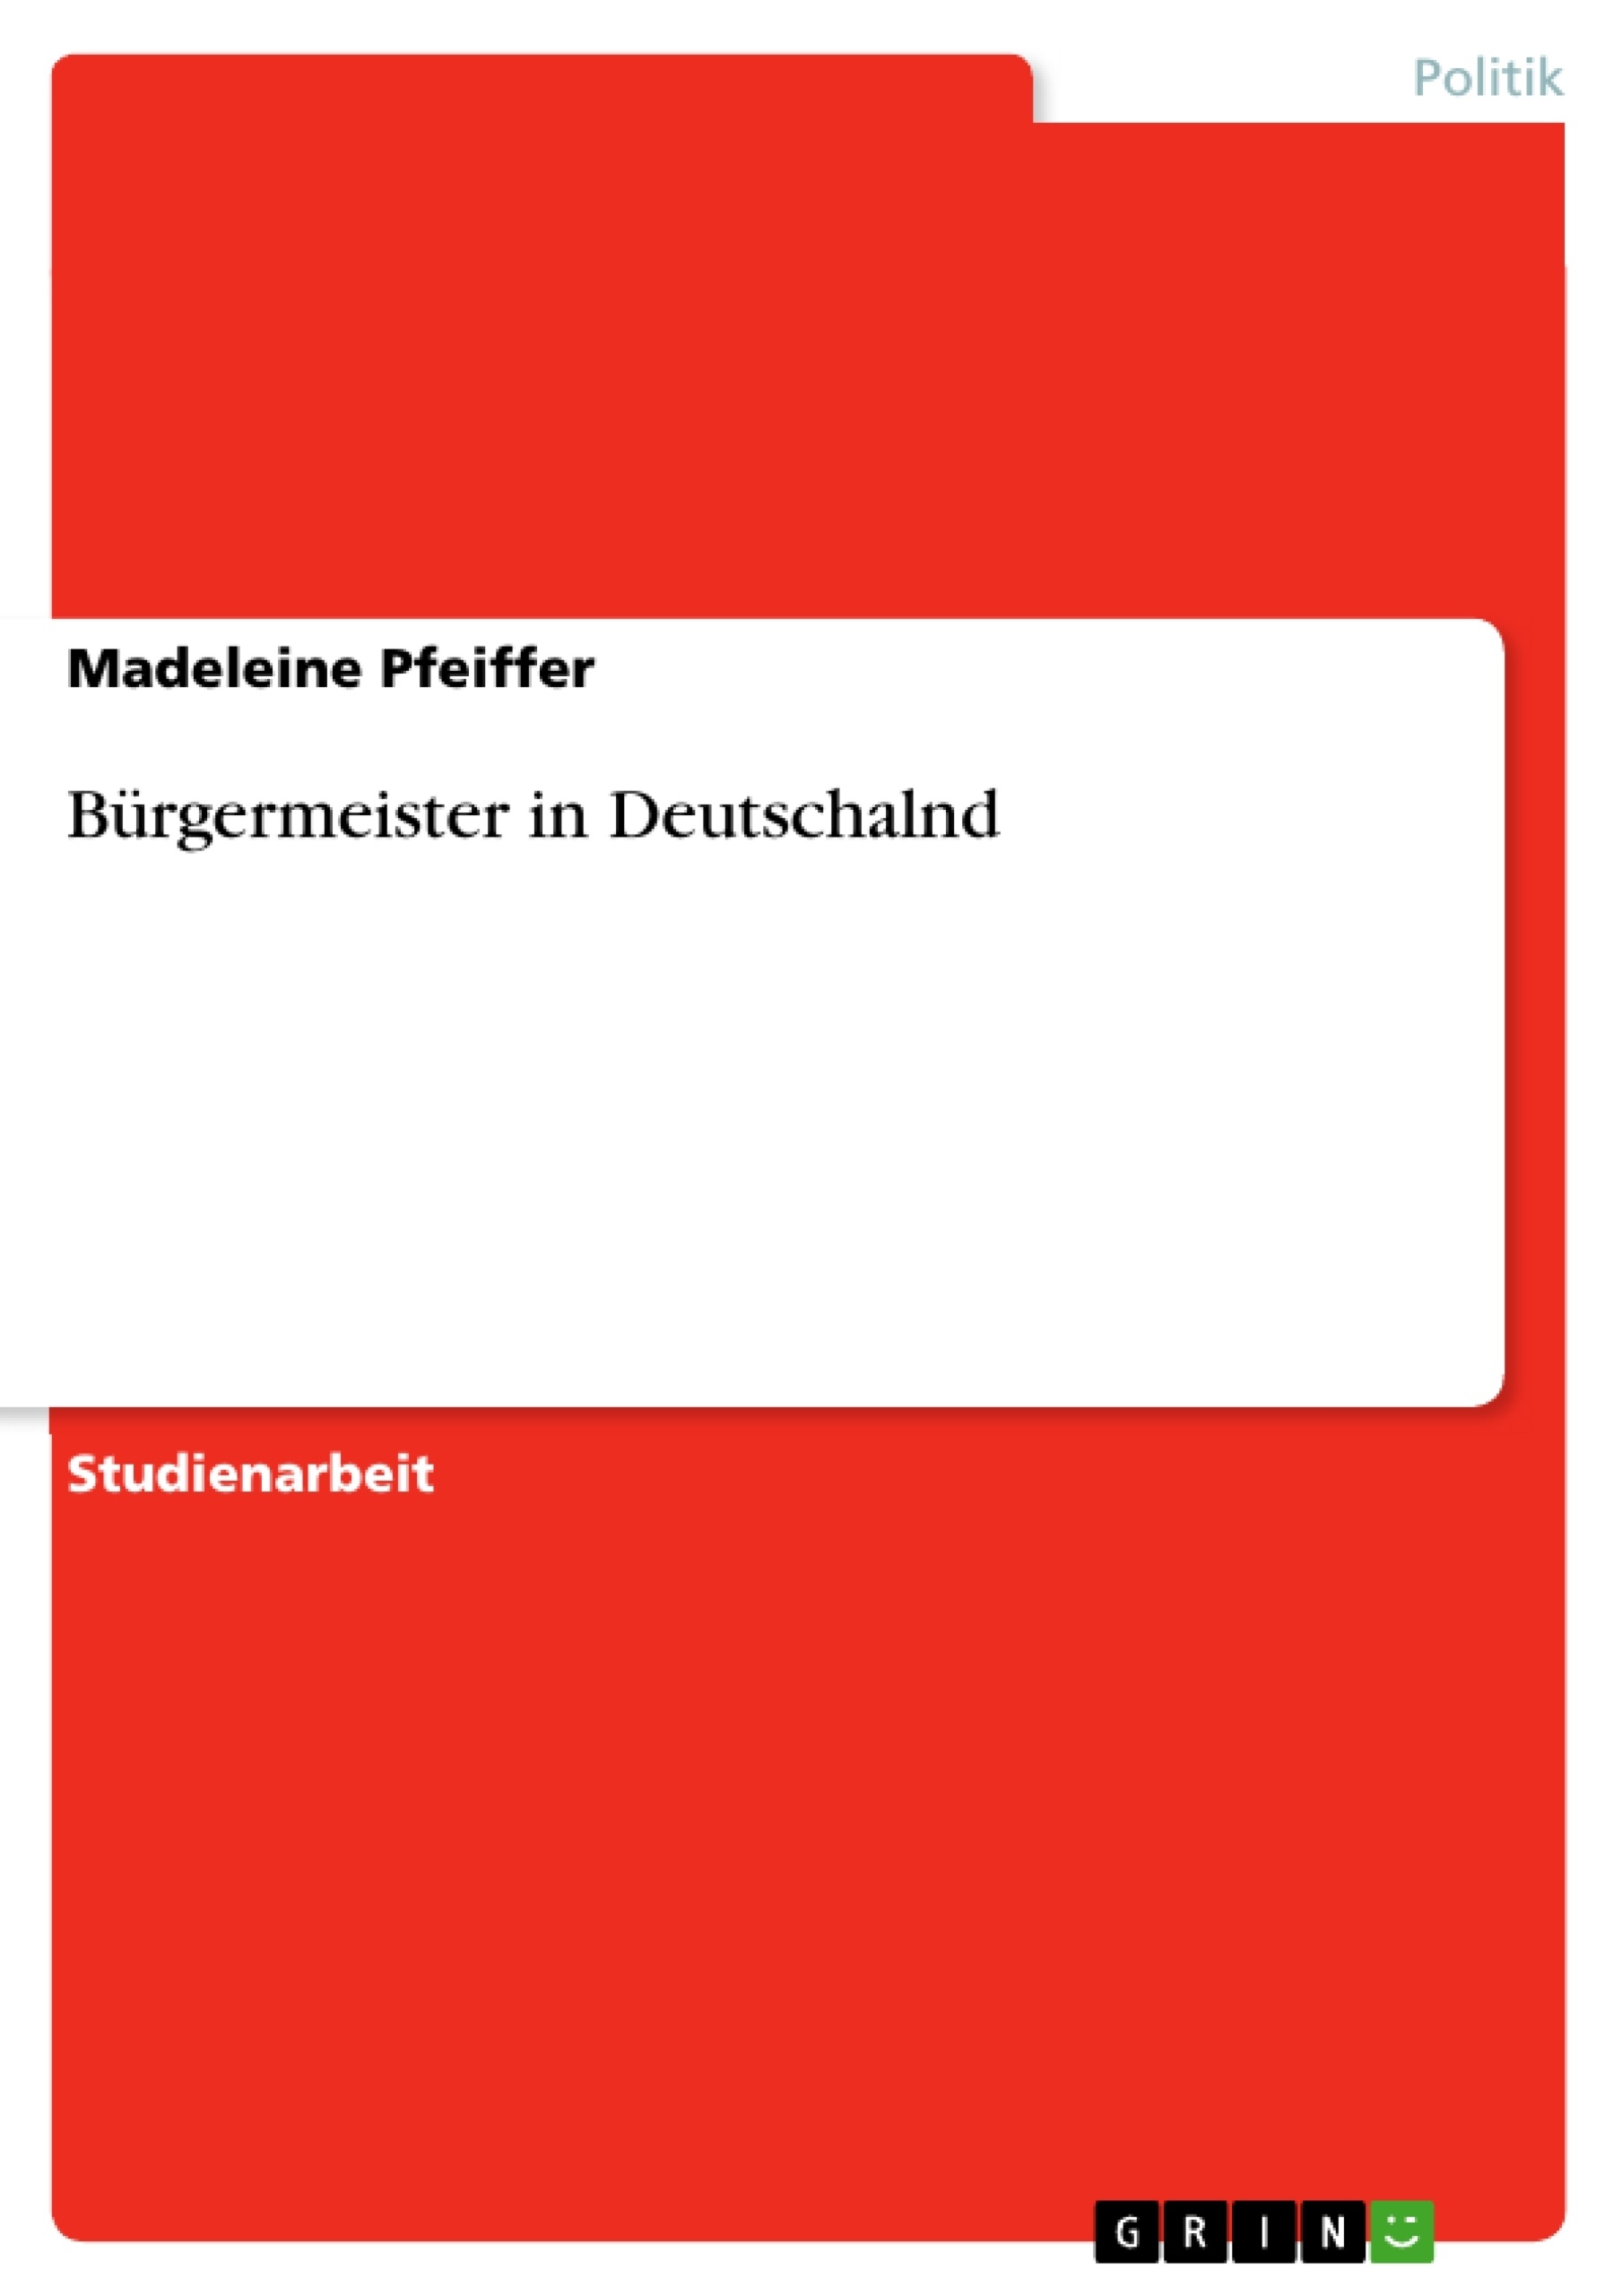 Título: Bürgermeister in Deutschalnd 